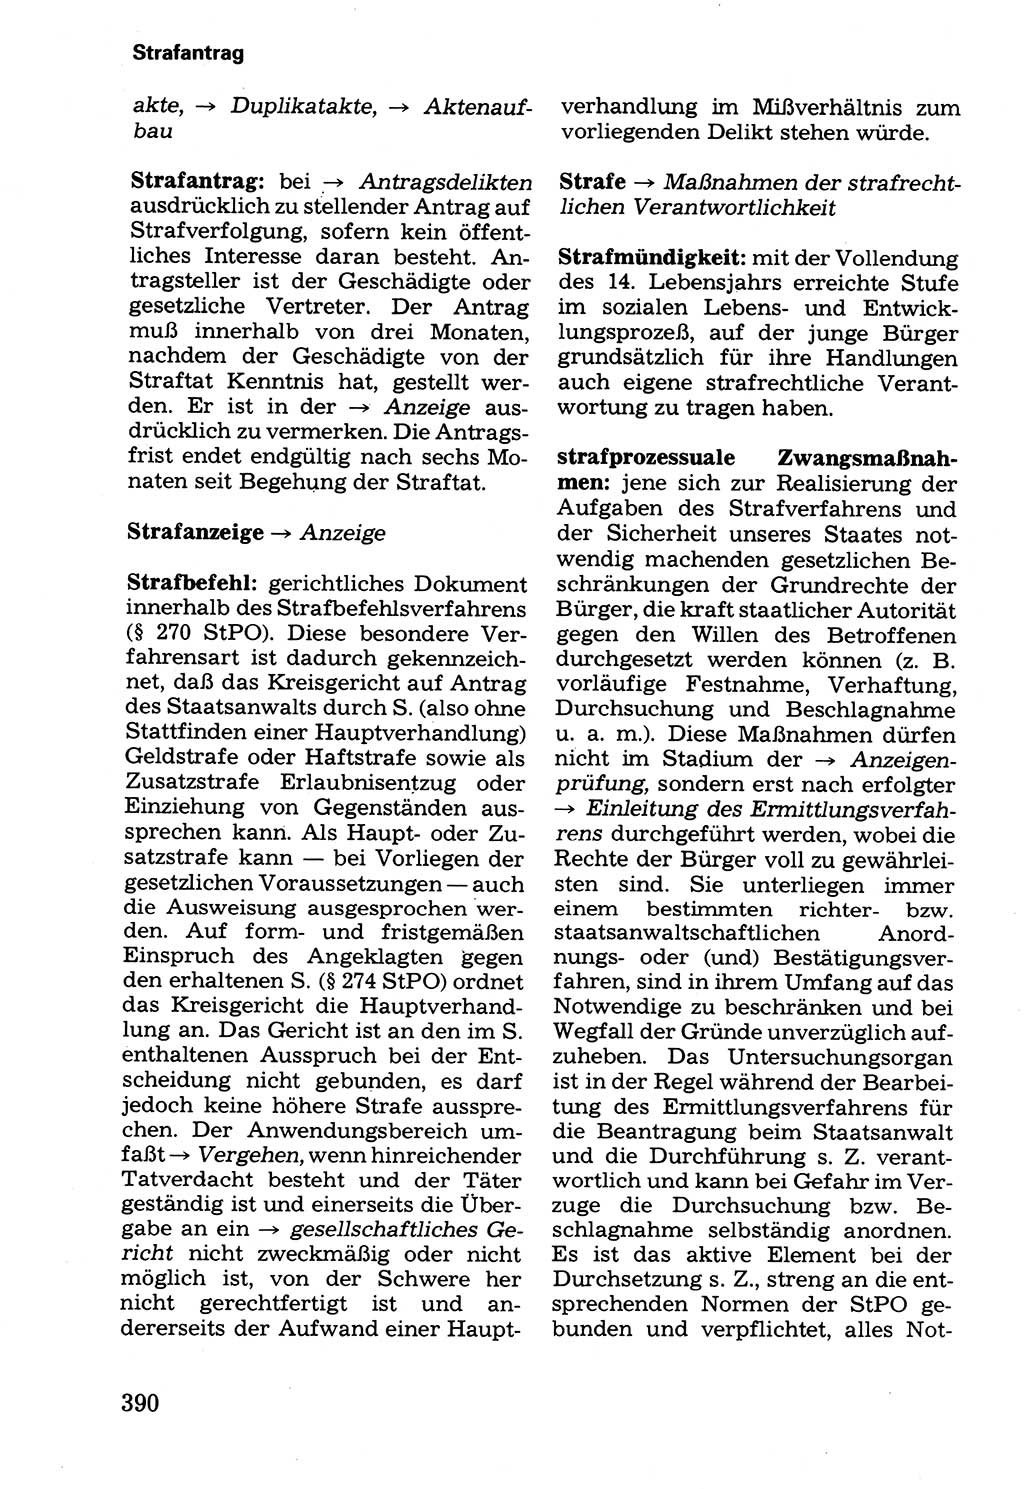 Wörterbuch der sozialistischen Kriminalistik [Deutsche Demokratische Republik (DDR)] 1981, Seite 390 (Wb. soz. Krim. DDR 1981, S. 390)